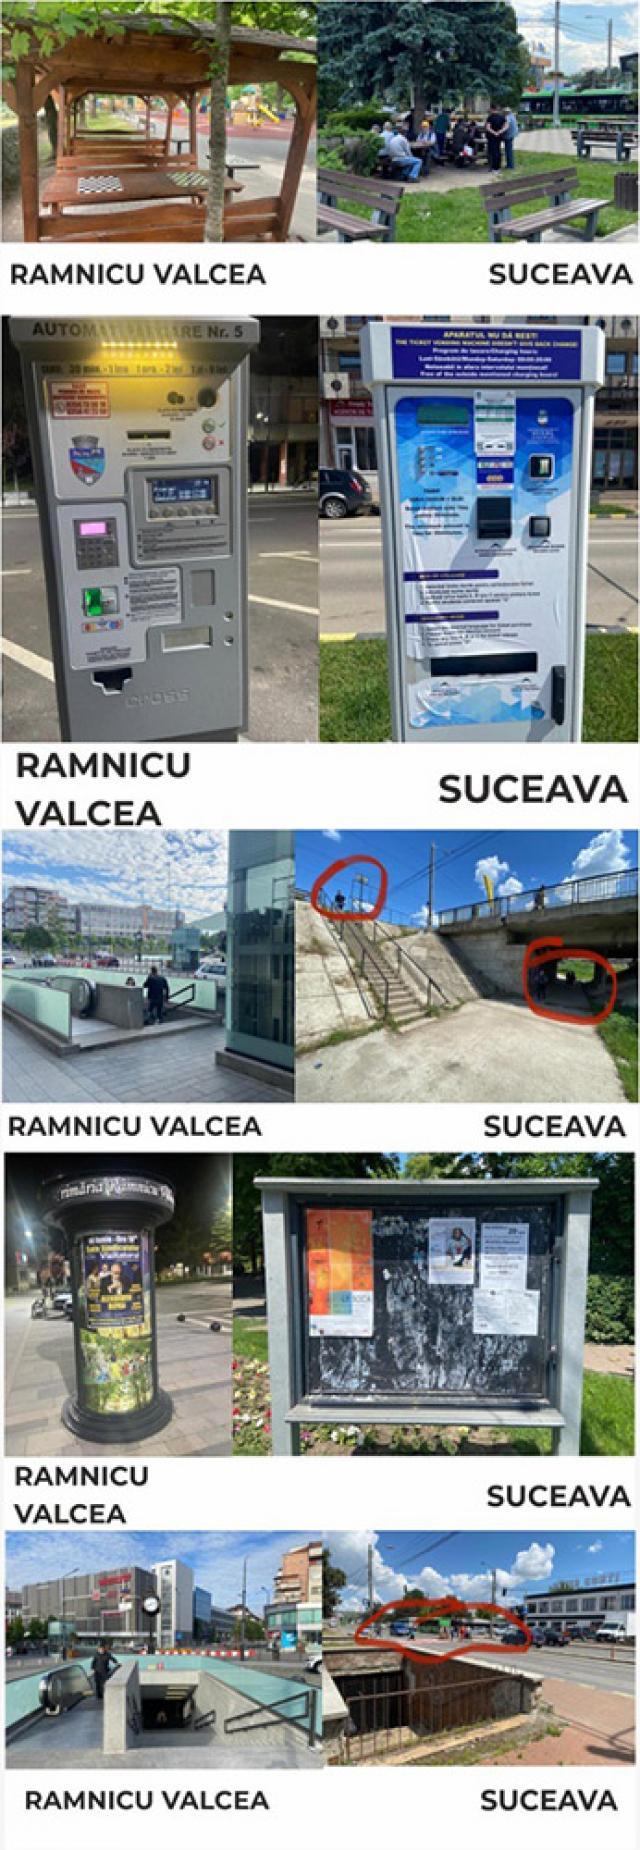 Cuşnir face comparaţie între lucrările de modernizare din Suceava şi cele din Râmnicu Vâlcea